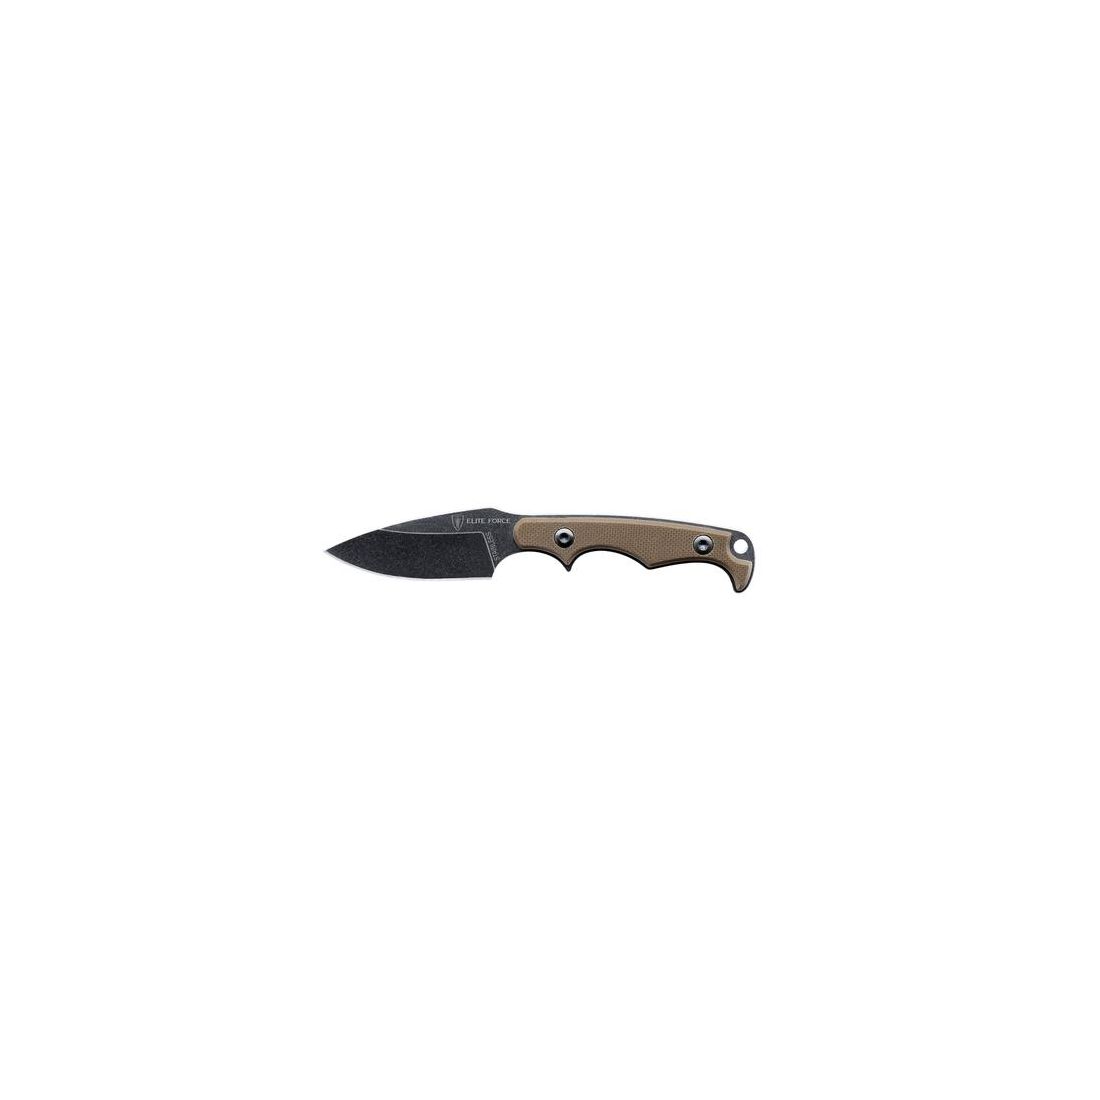 UMAREX Feststehendes Messer Elite Force Neck-Knive 'EF714' 5,5cm Klinge